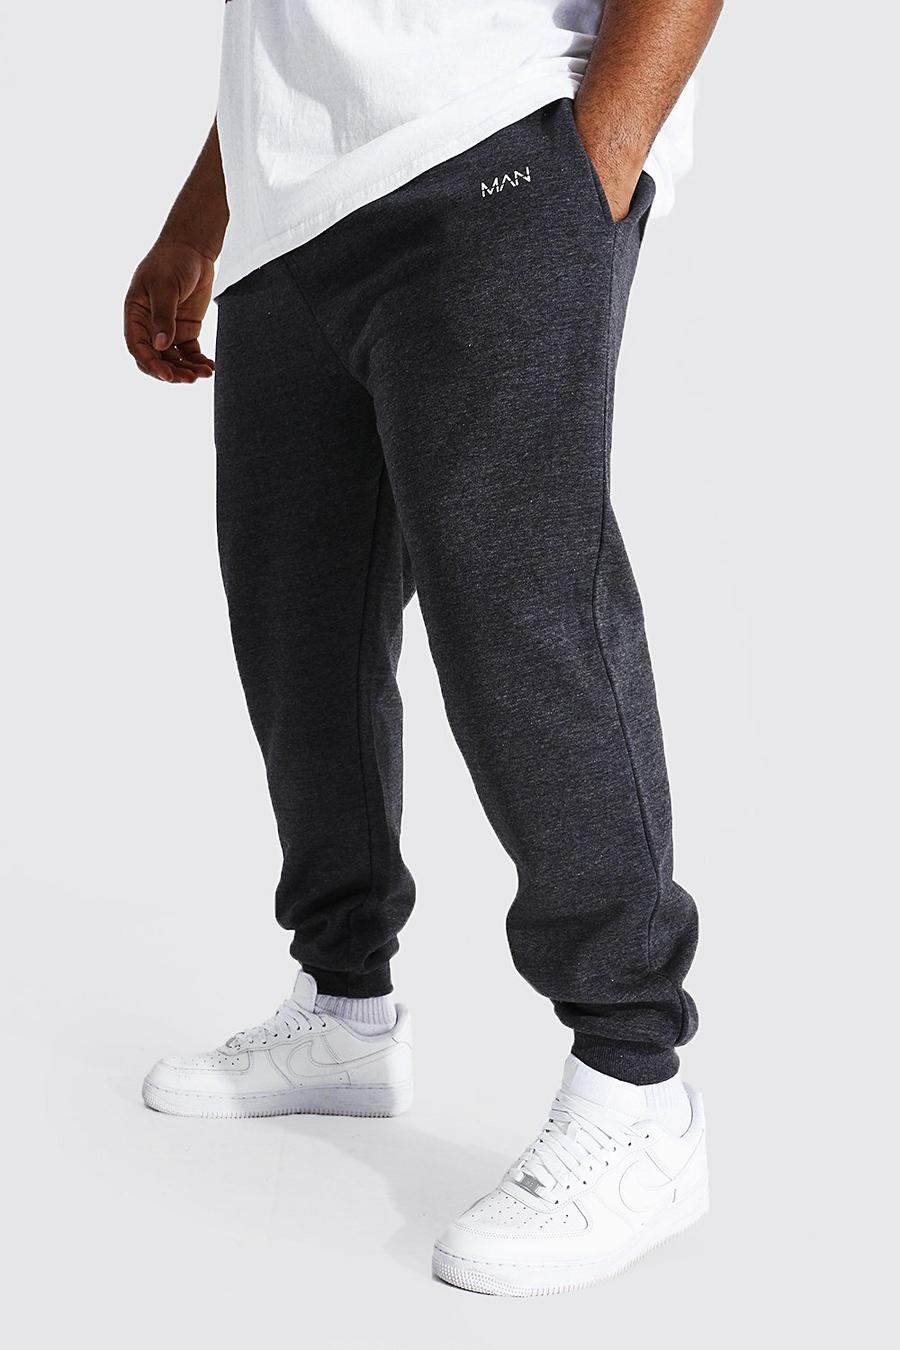 Pantaloni tuta Plus Size Man Dash in fibre riciclate Slim Fit, Charcoal grigio